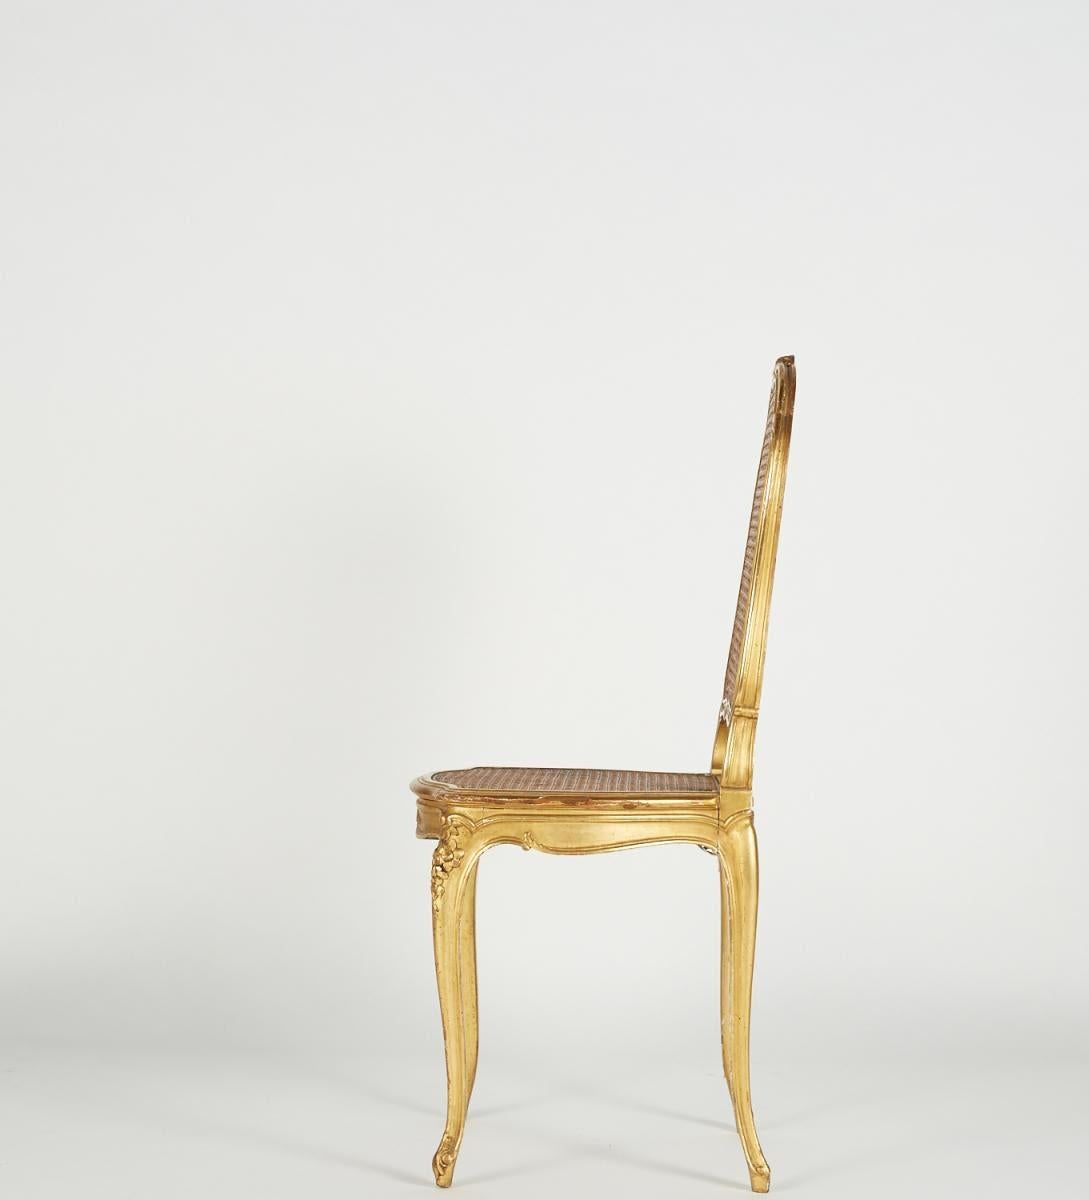 Chaise en bois doré de style Louis XV, 19e siècle.

Chaise de style Louis XV en bois sculpté et doré, assise et dossier cannés, fin du XIXe siècle, manque de dorure pouvant être restauré sur demande.

Dimensions : h : 96cm, l : 42cm, p : 44cm